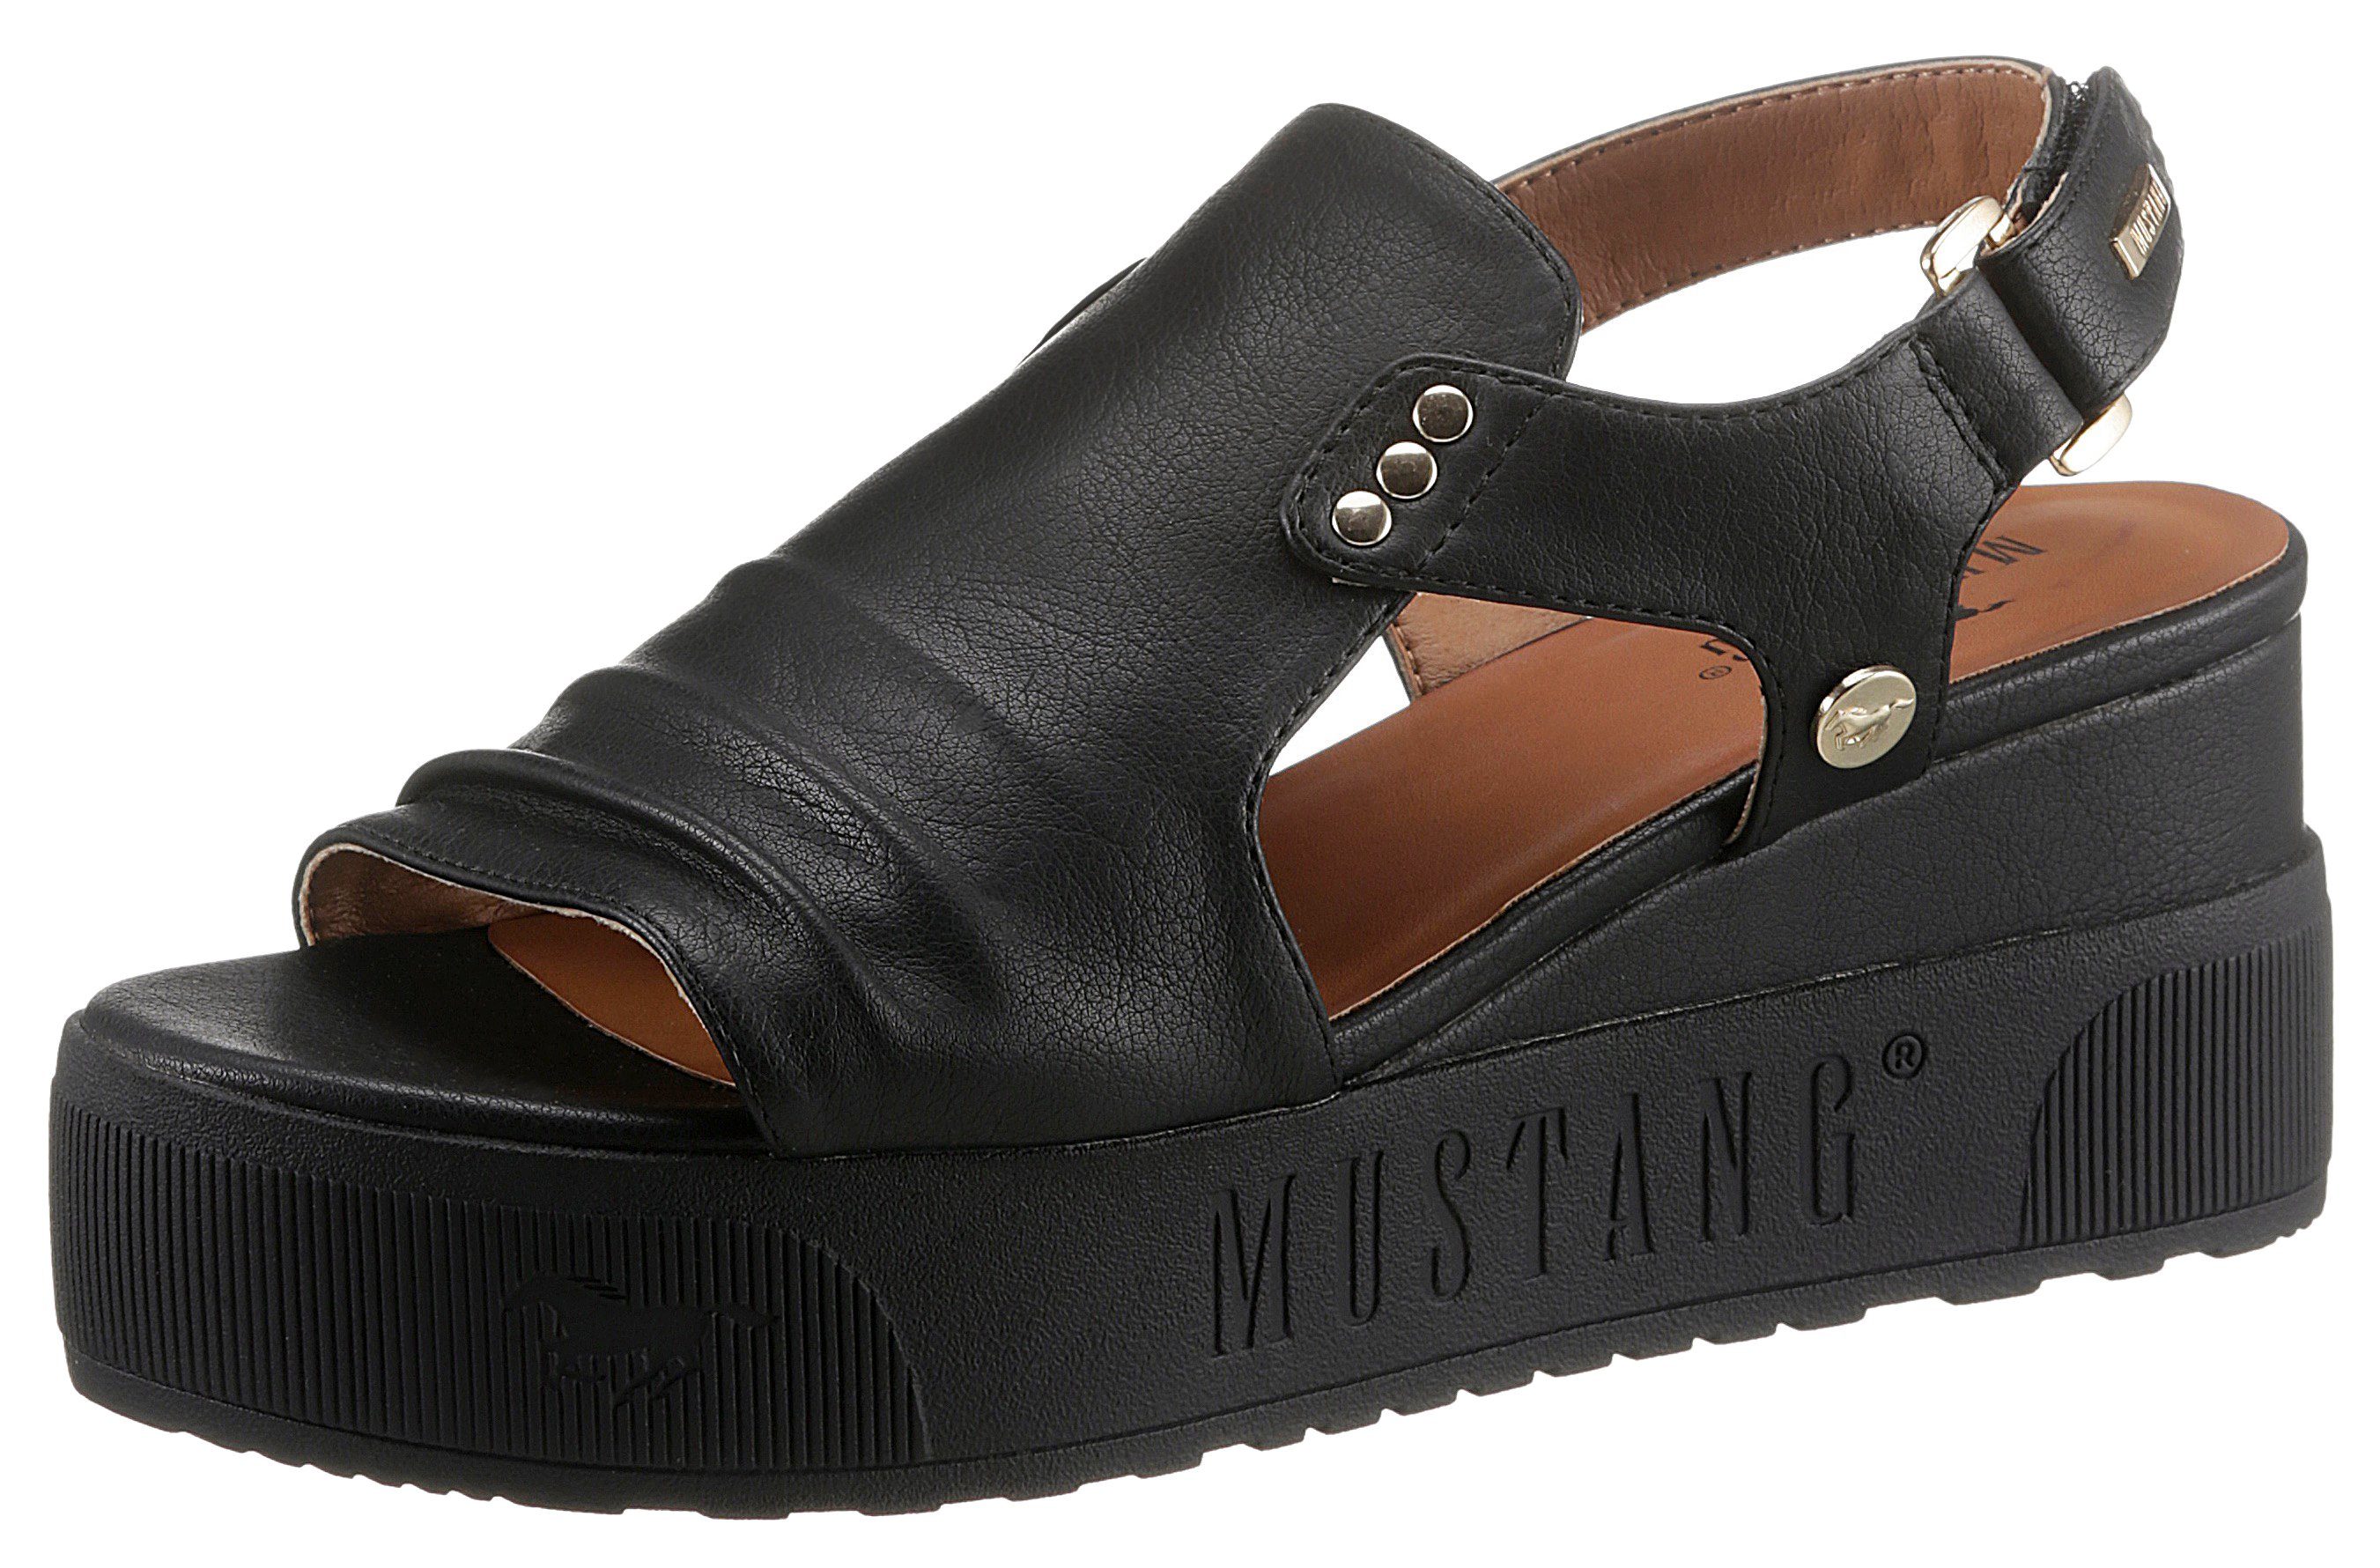 Mustang Shoes Keilsandalette Klettriemchen mit schwarz